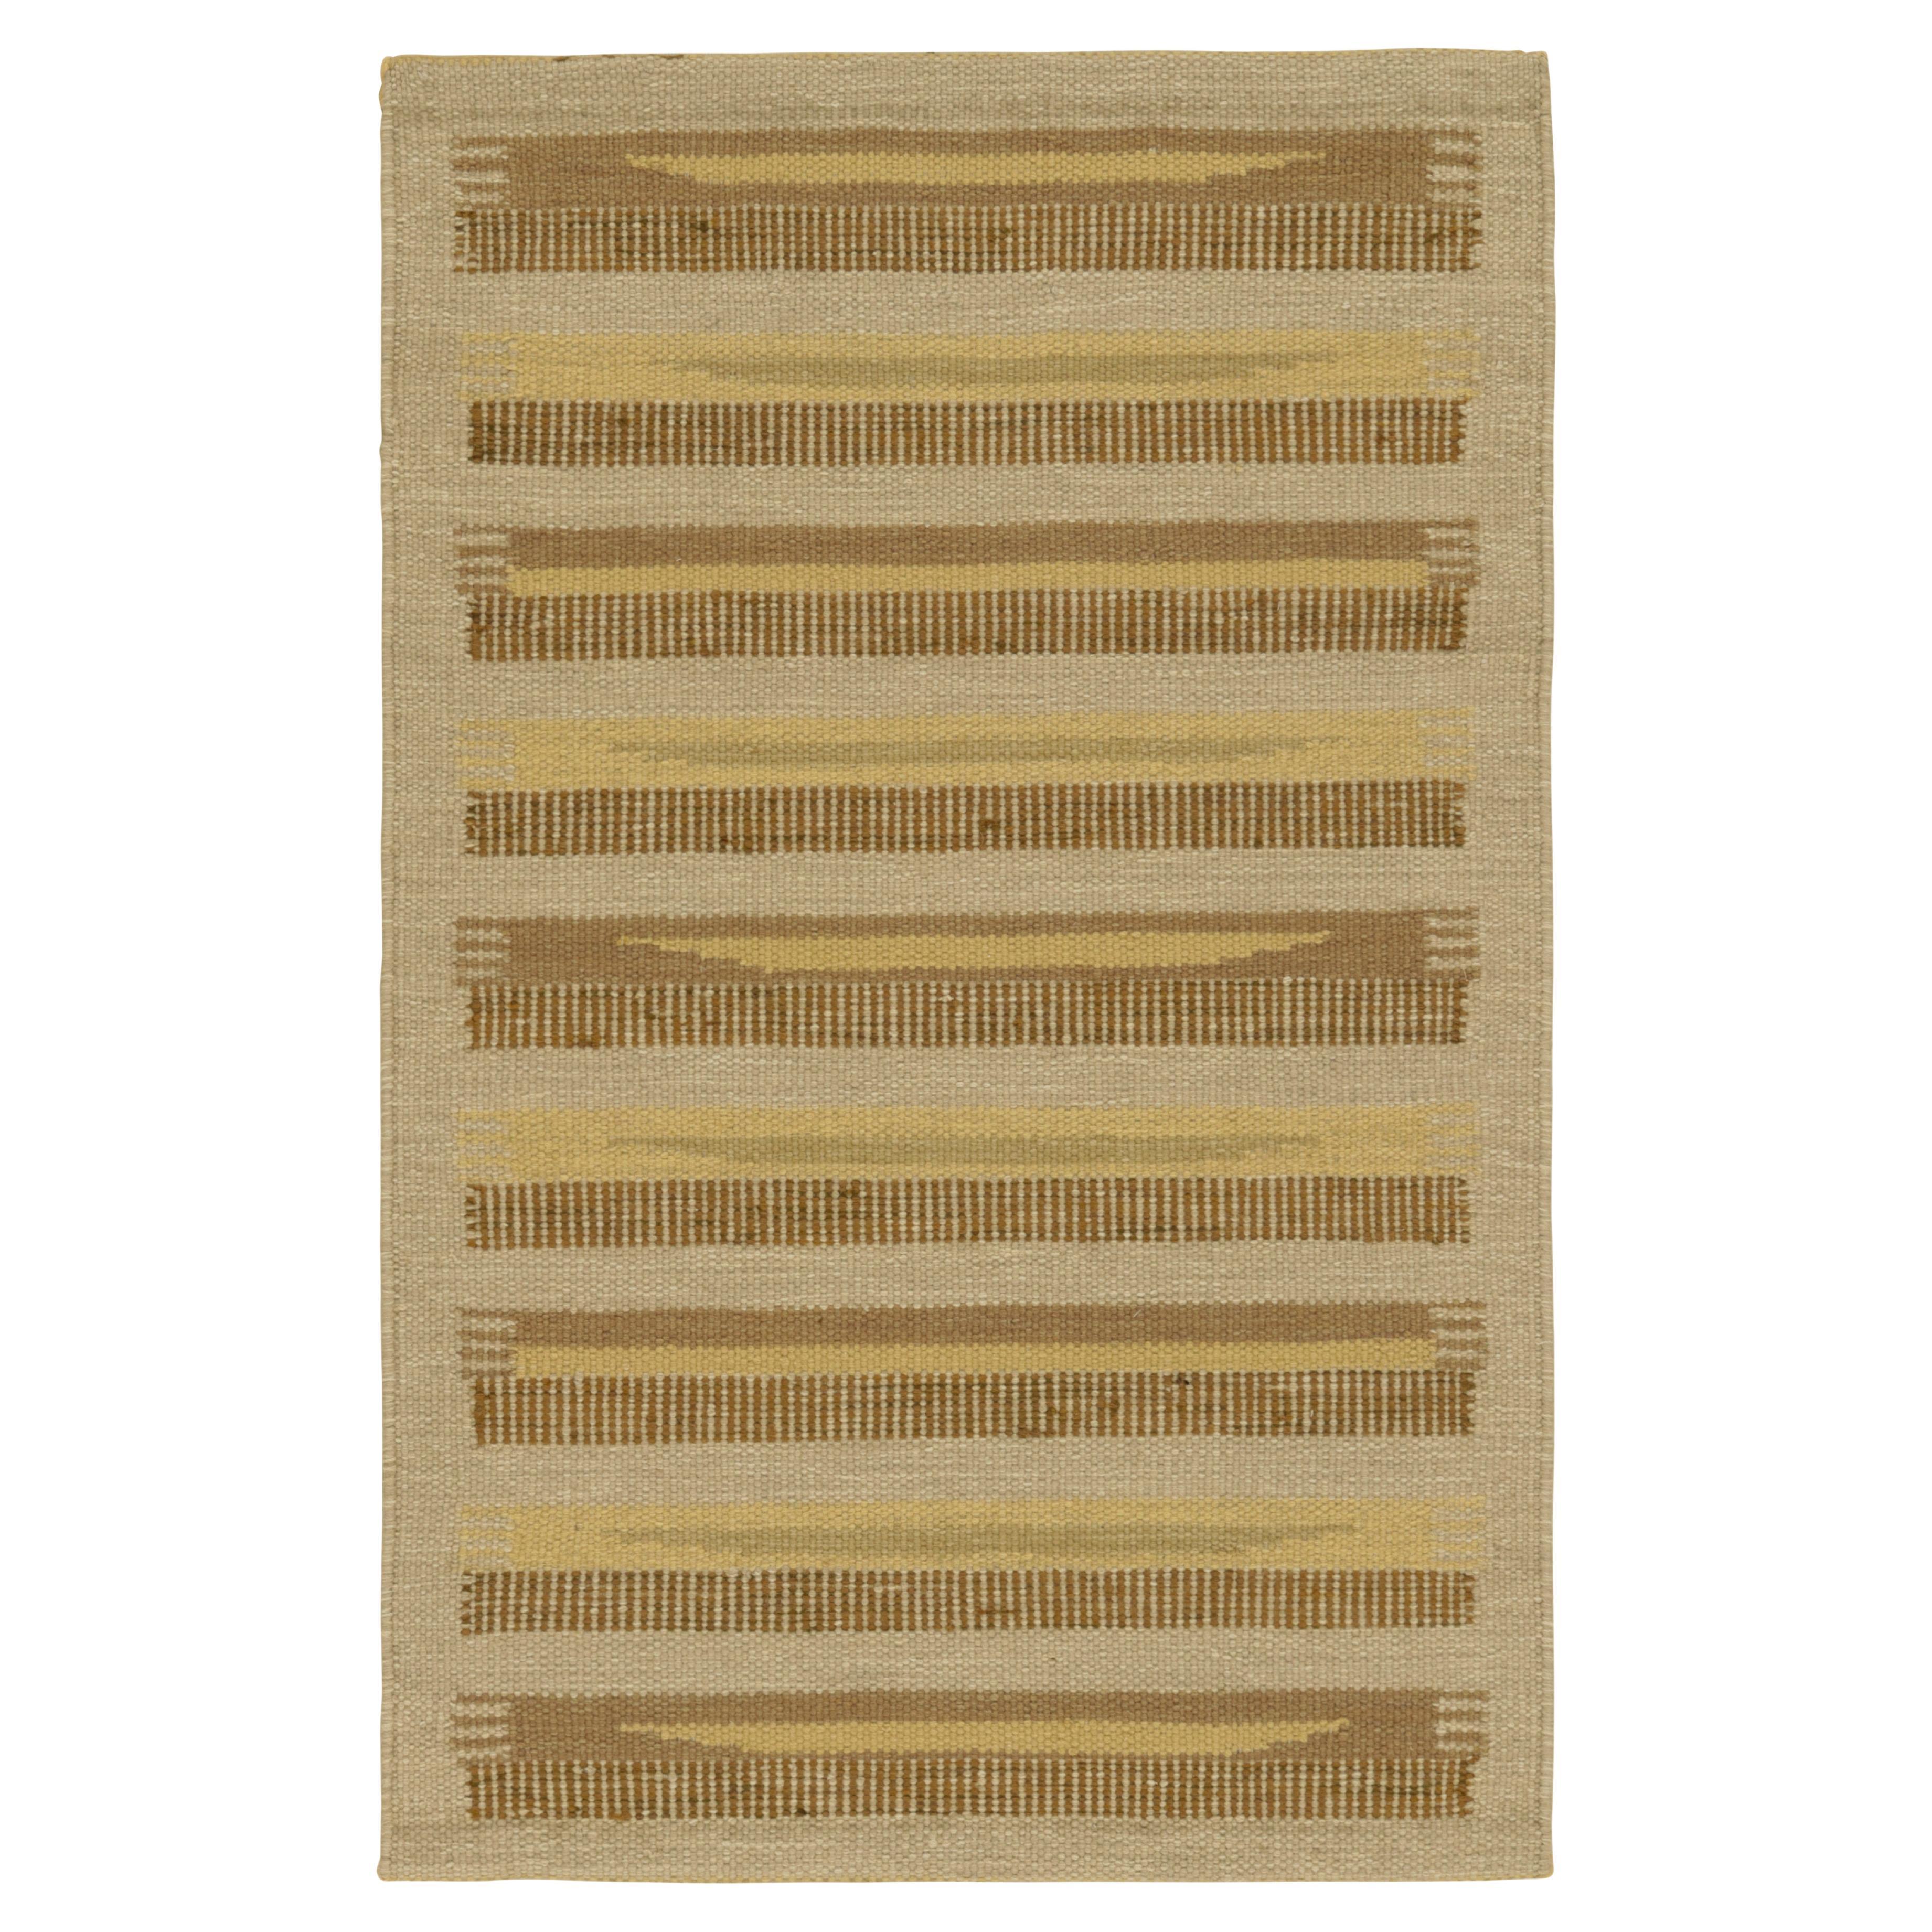 Rug & Kilim's Teppich im skandinavischen Stil in Beige mit braunen und goldenen Streifen